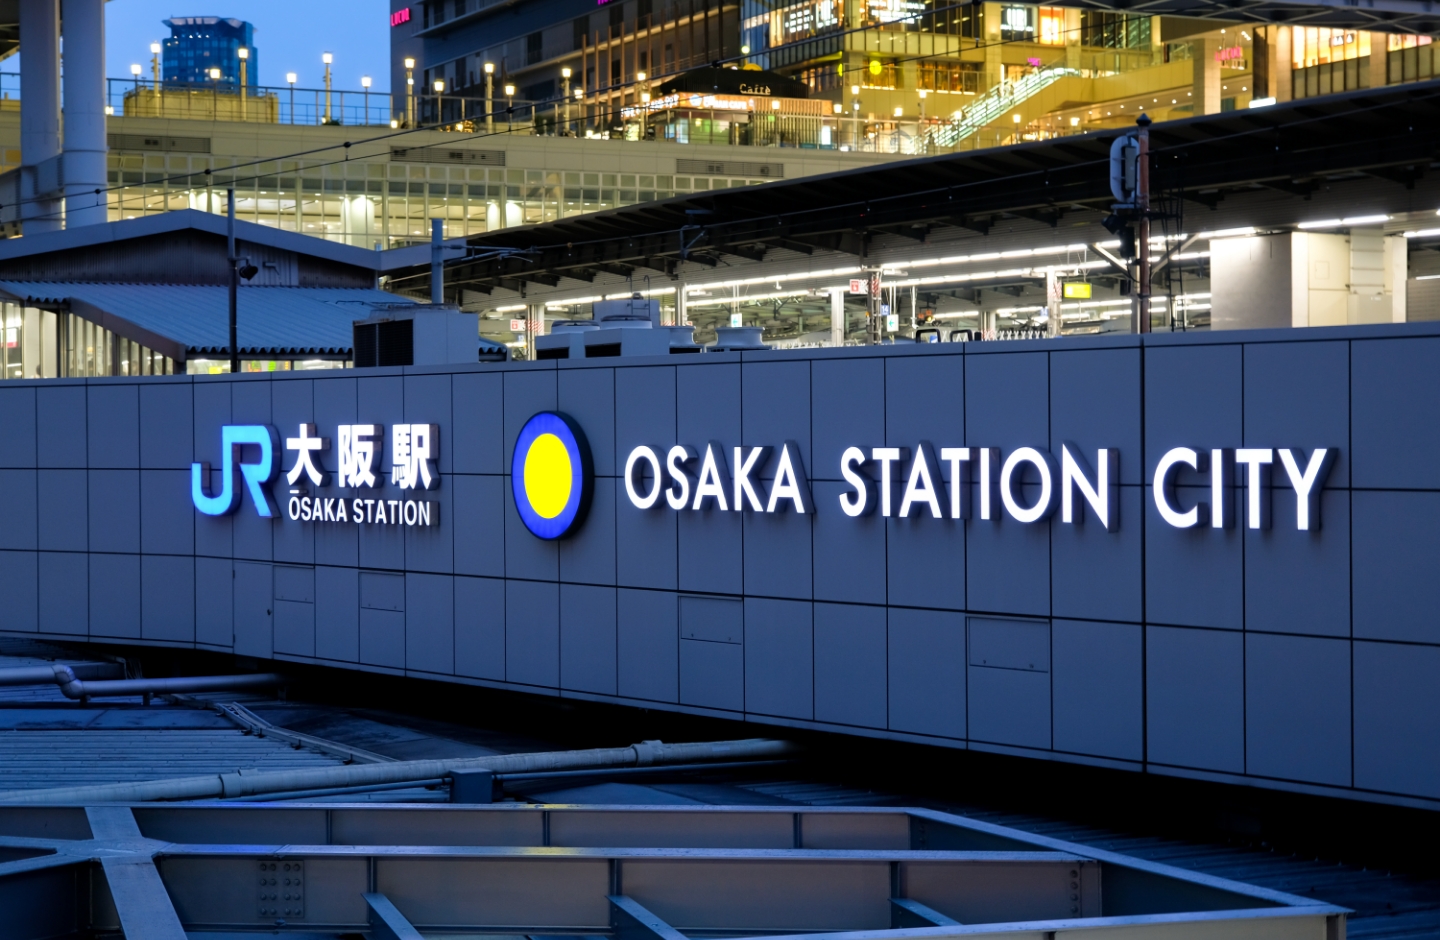 JR大阪駅から徒歩3分で通院しやすい